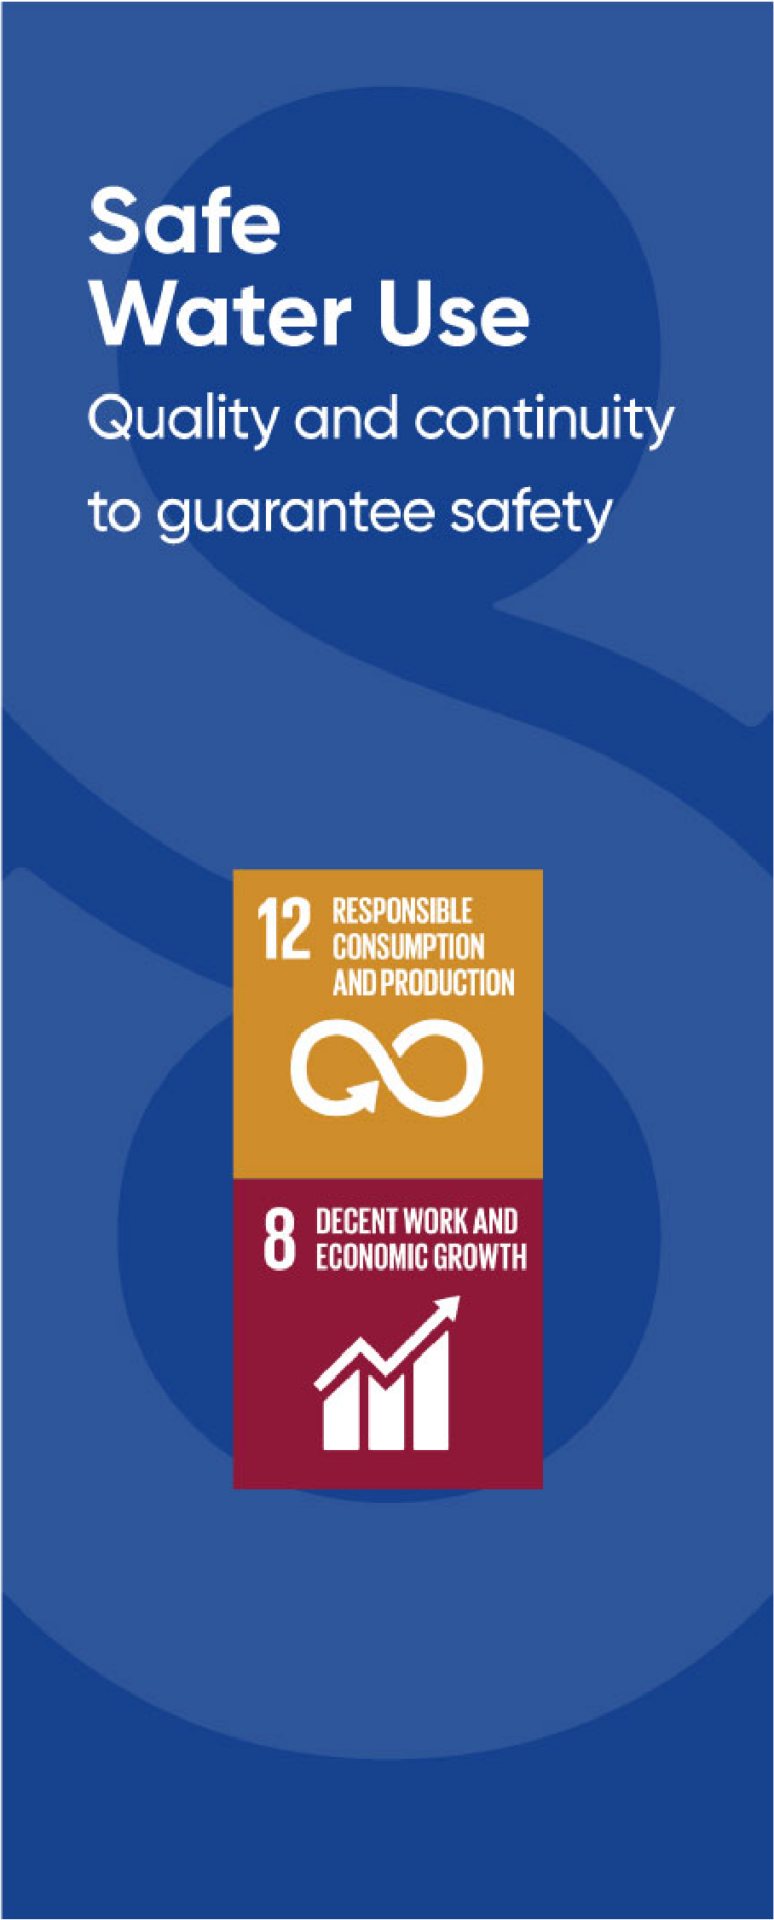 Symbolen van enkele duurzaamheidspijlers: Responsible consumption and production, decent work and economic growth.